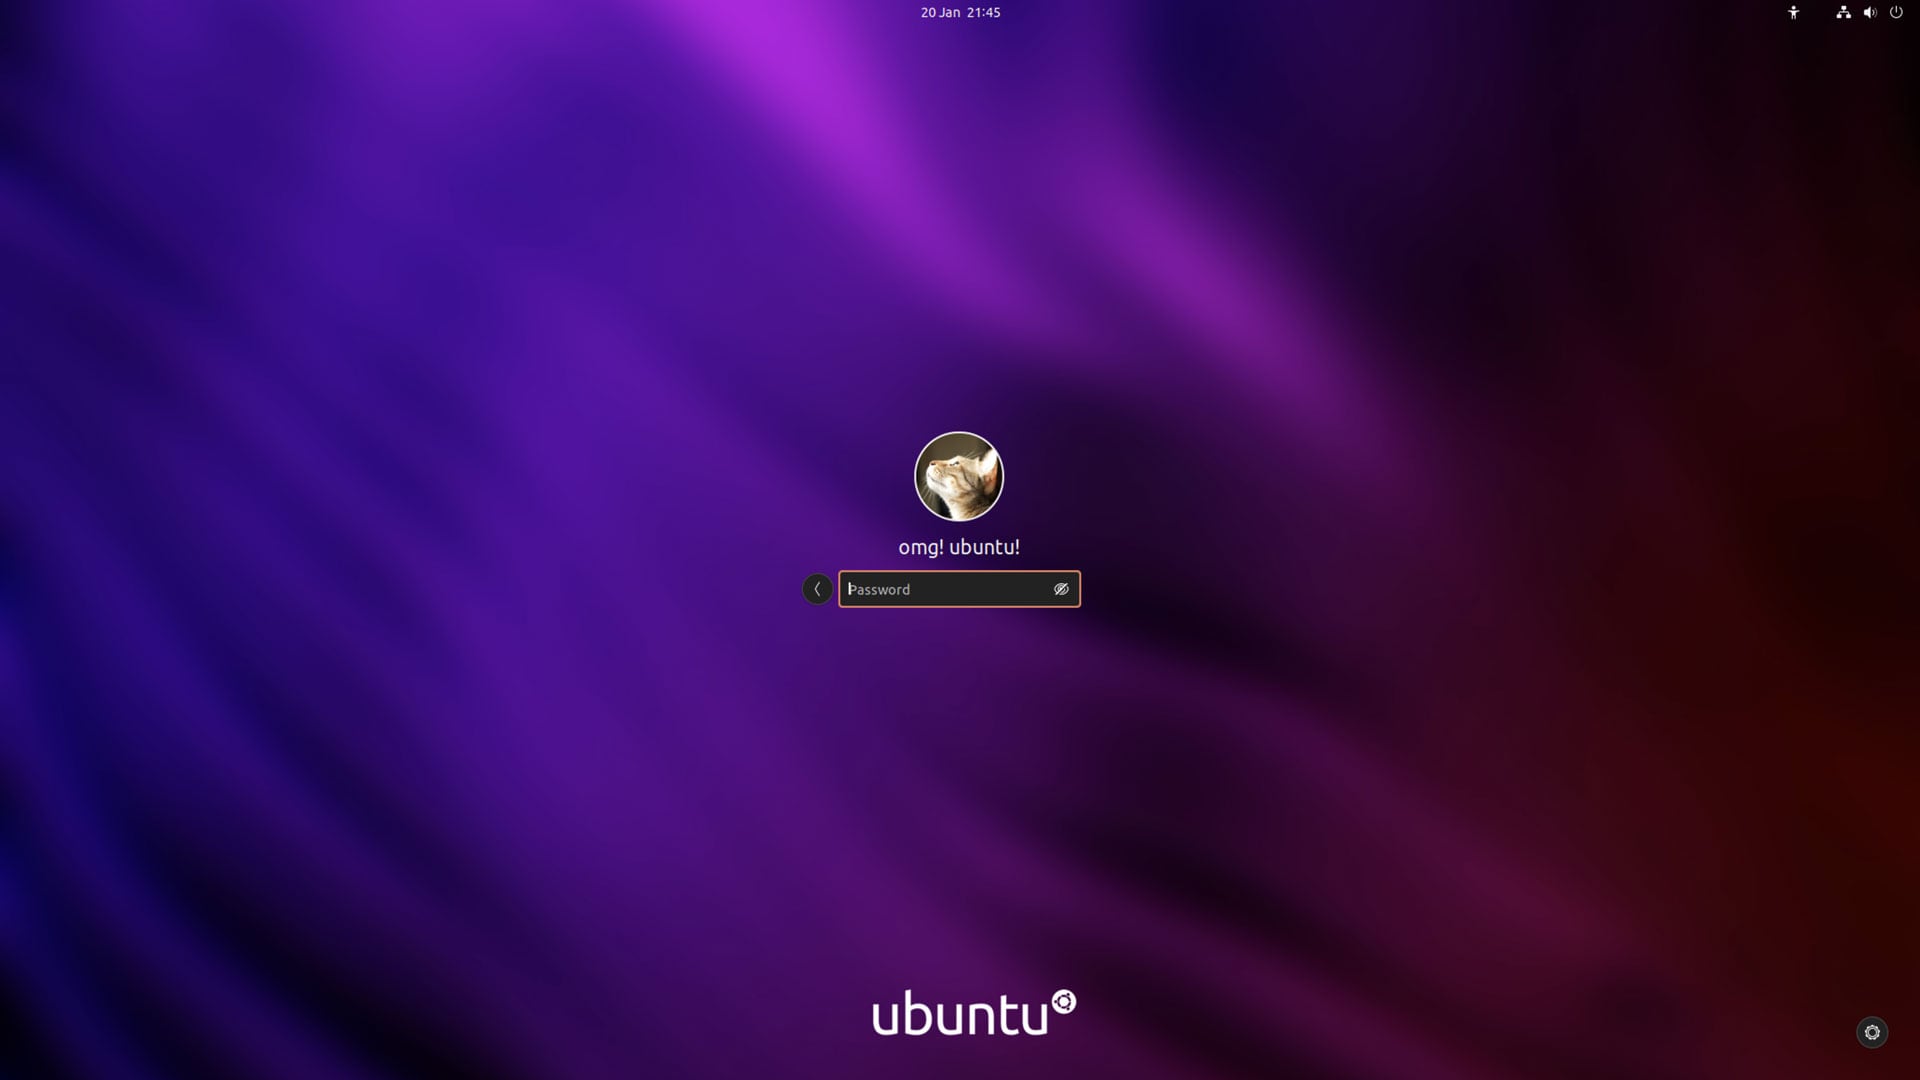 una captura de pantalla de la pantalla de inicio de sesión de ubuntu (GDM) usando otra imagen personalizada